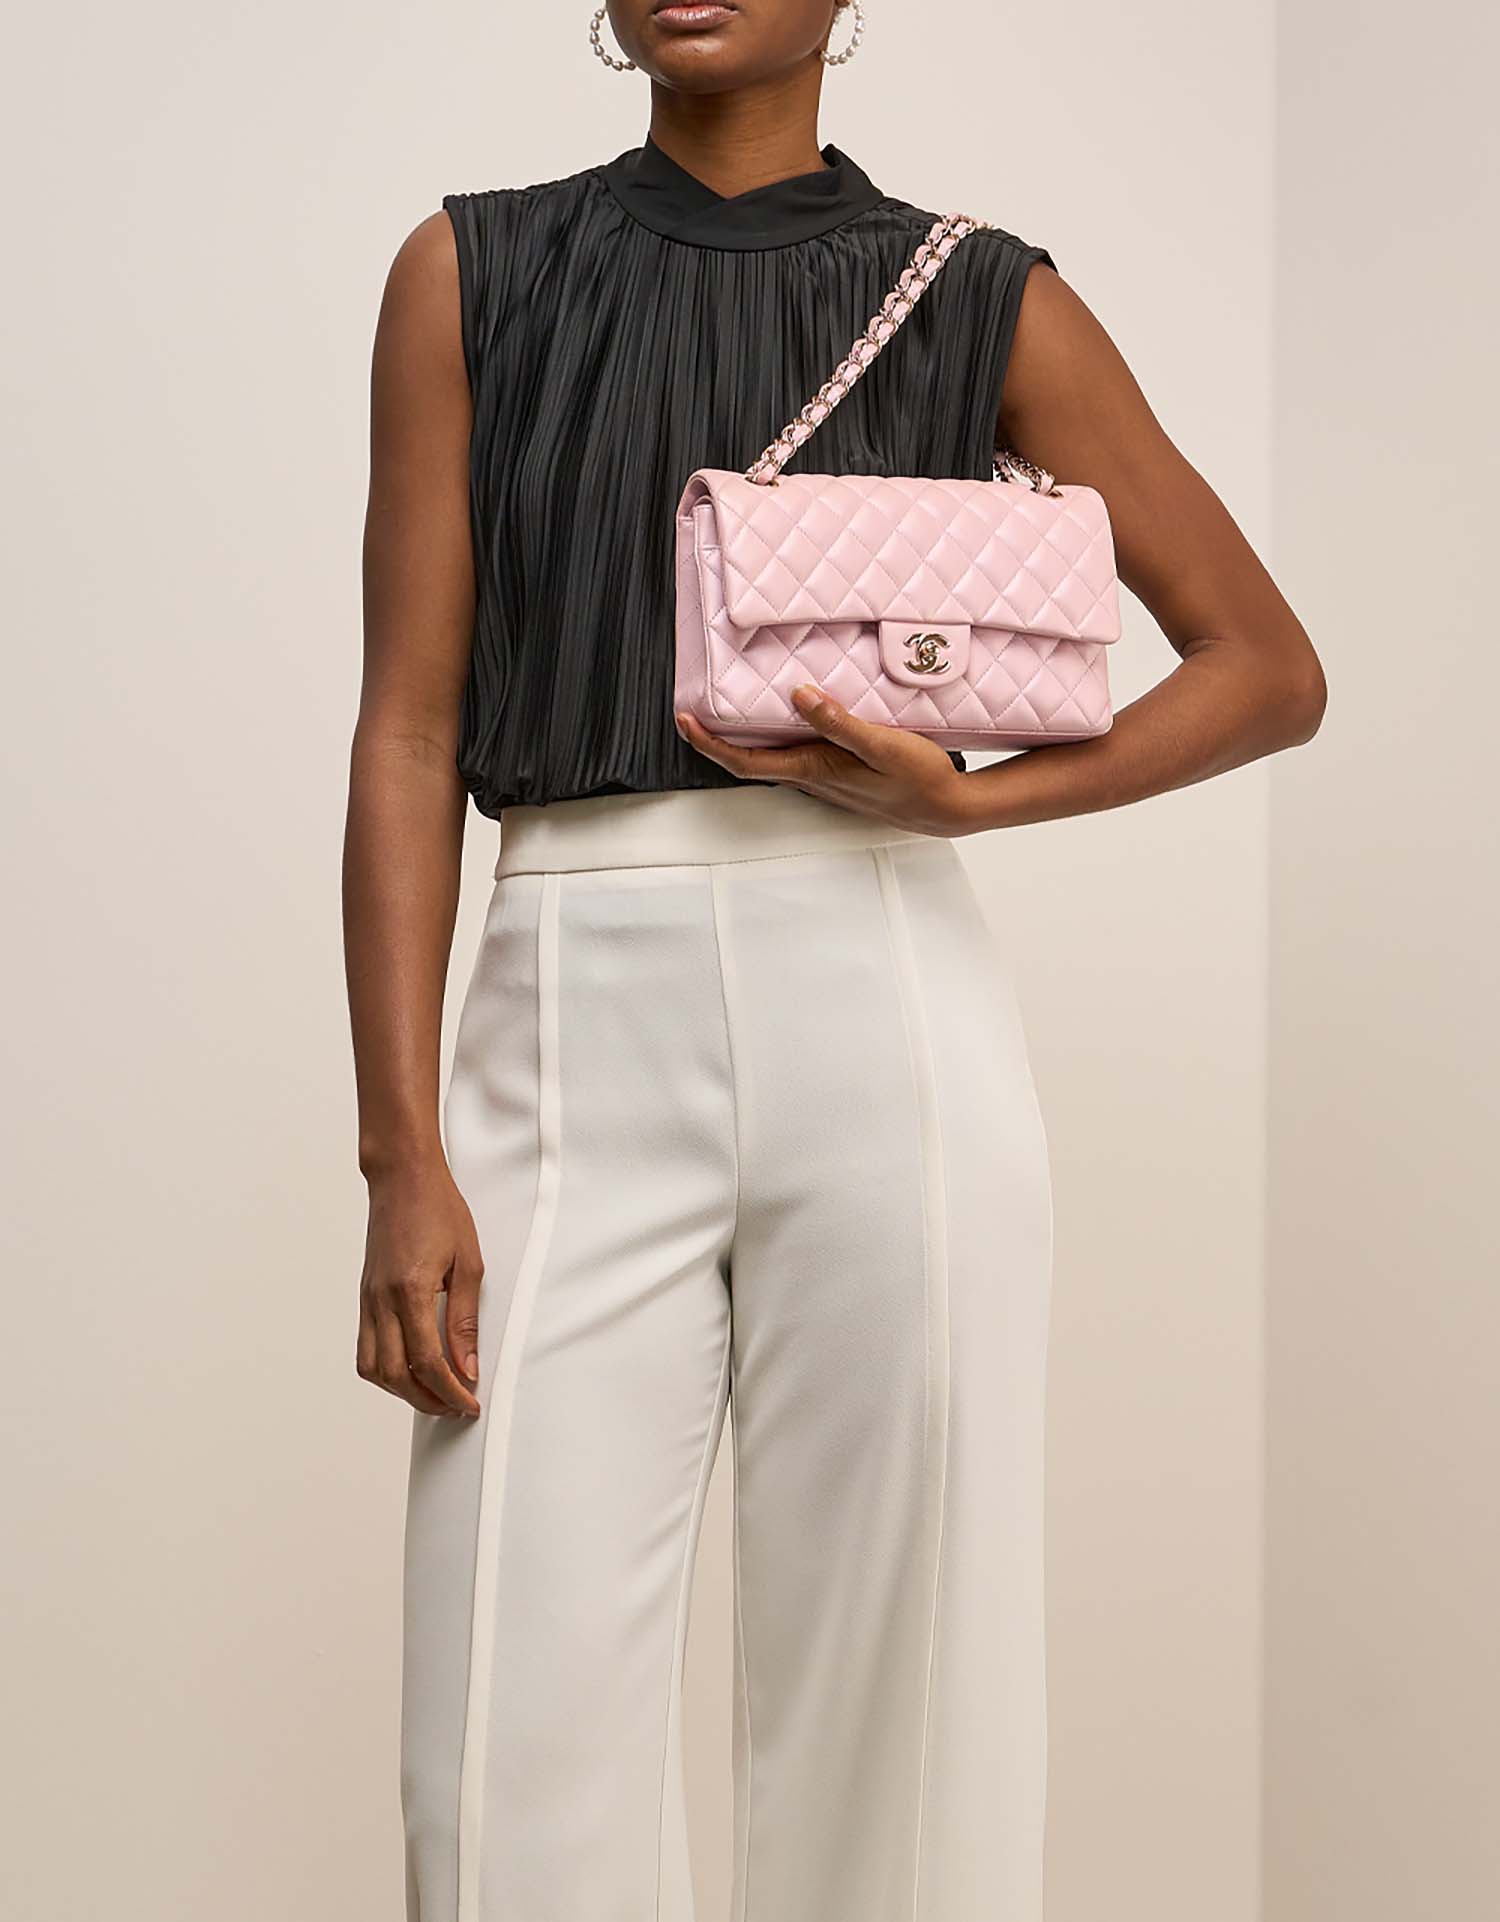 Chanel Timeless Medium LightPink on Model | Verkaufen Sie Ihre Designer-Tasche auf Saclab.com